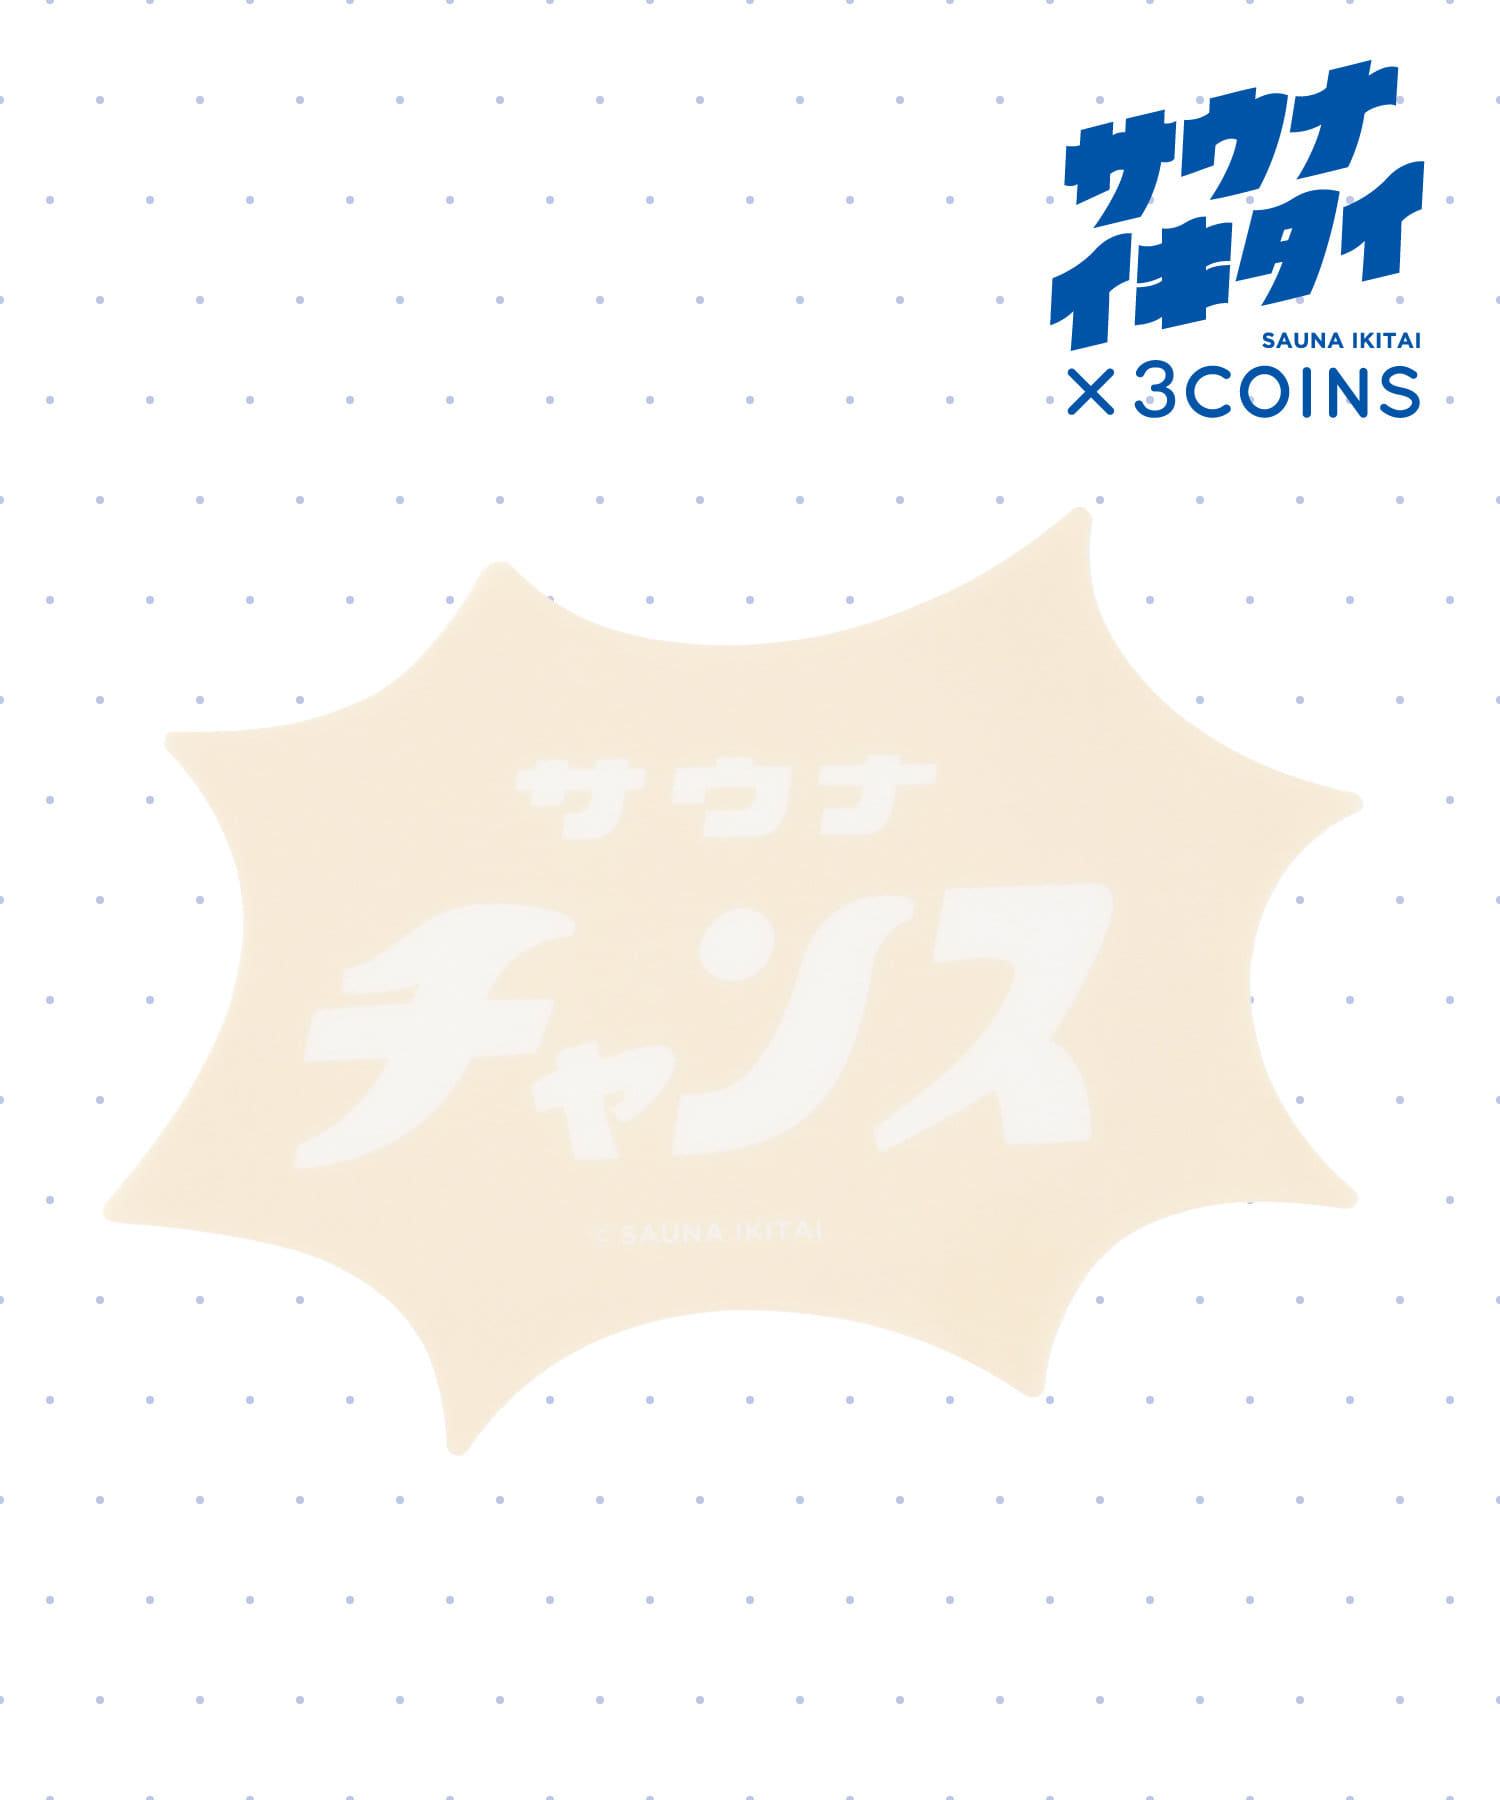 3COINS(スリーコインズ) 【サウナイキタイ】PVCランチョンマット